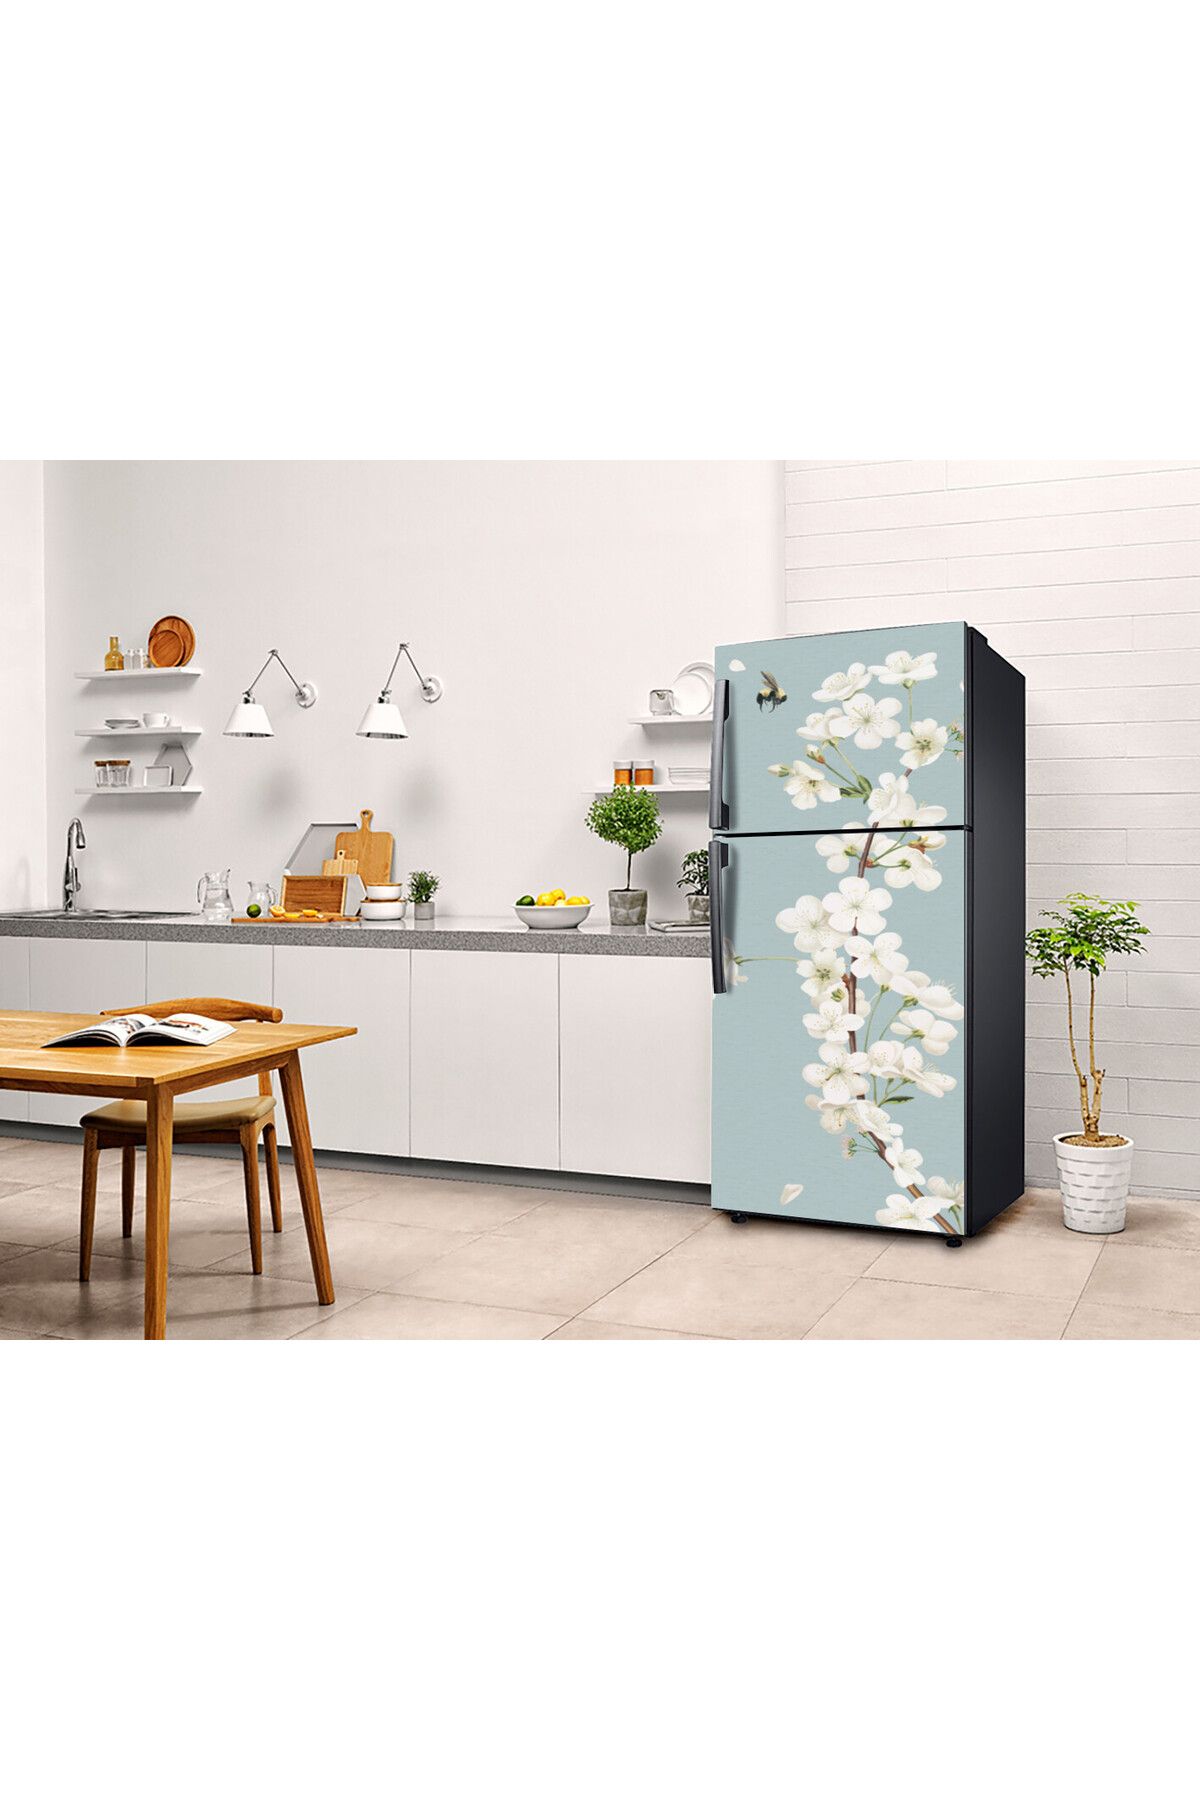 çizmeli Buzdolabı Kaplama Sticker & Beyaz Eşya Yapışkanlı Folyo Kaplama Sticker (75X200CM)